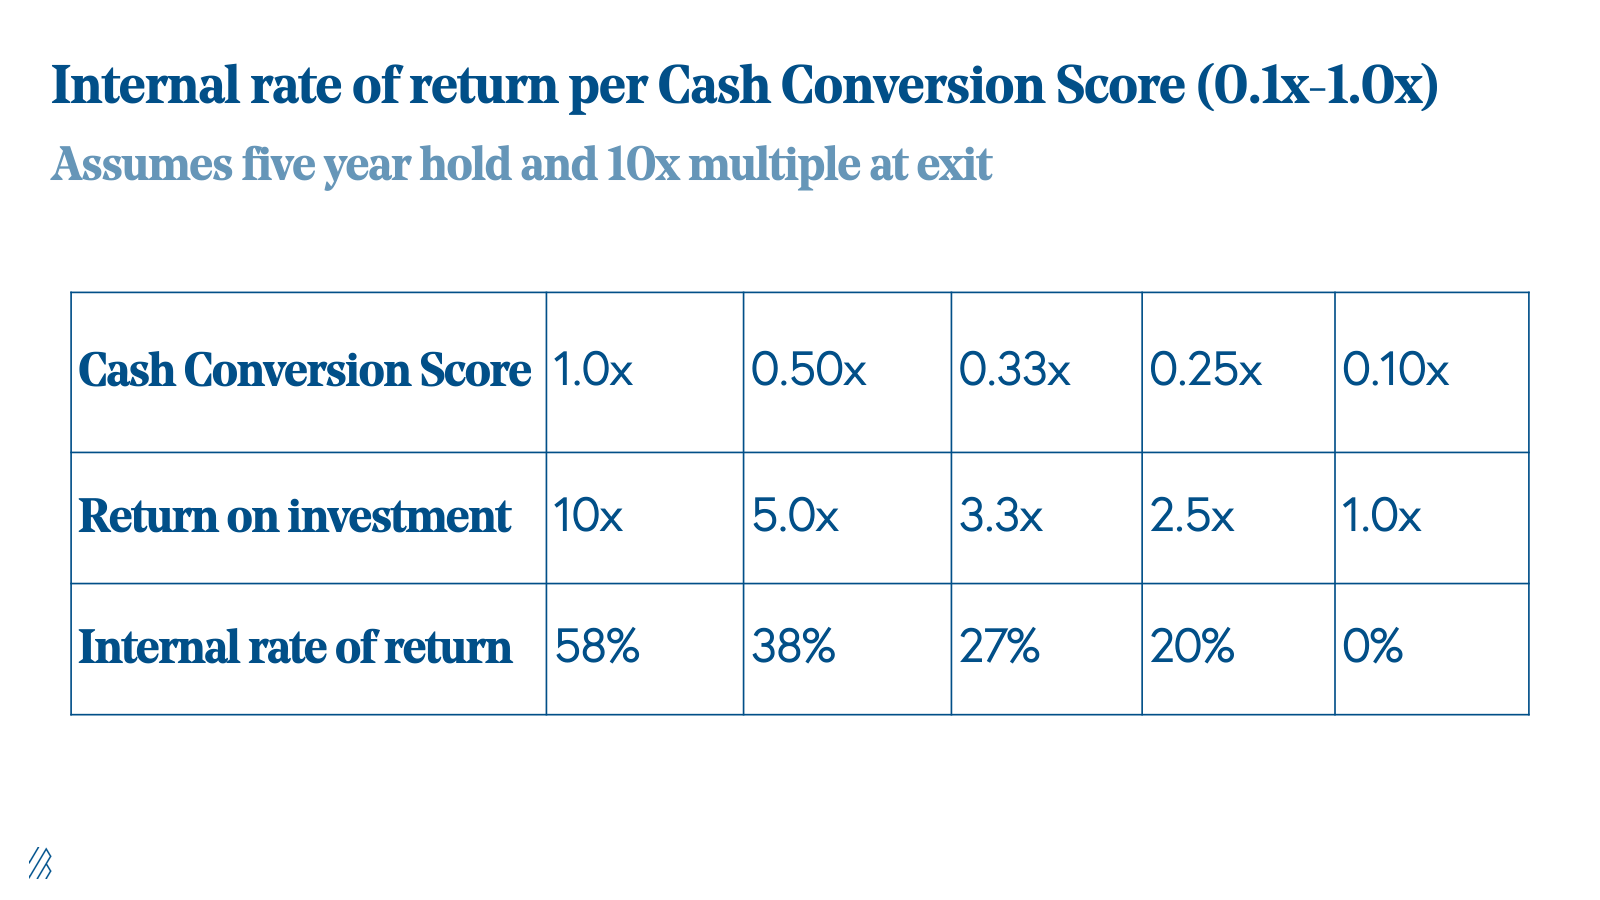 Internal rate of return per Cash Conversion Score 